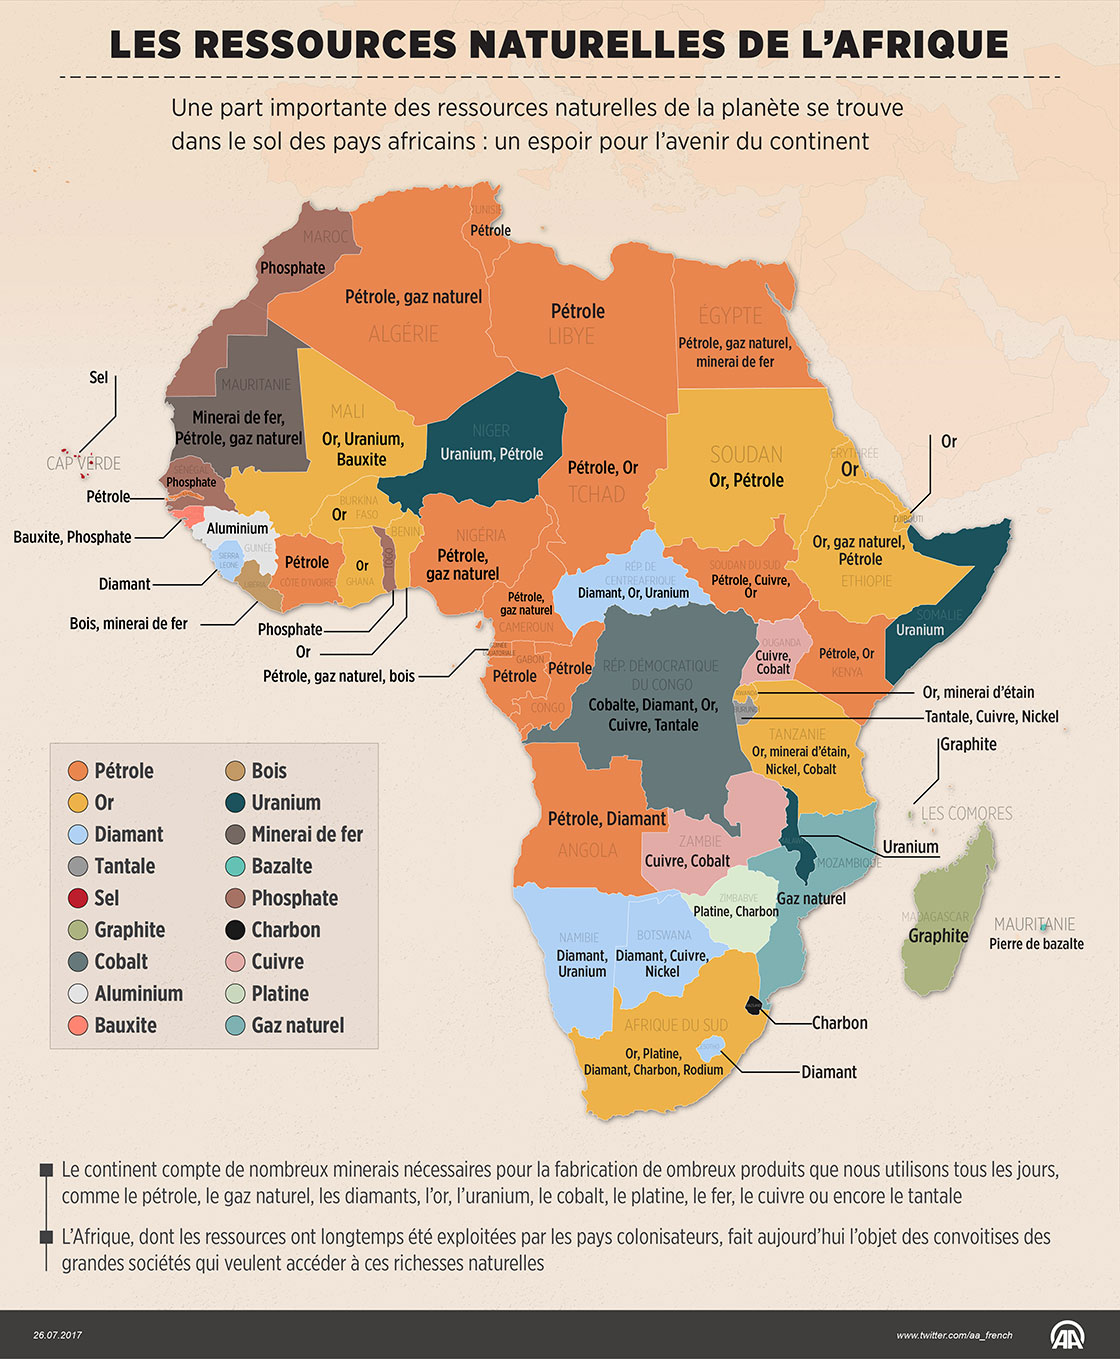 Les ressources naturelles de l'Afrique